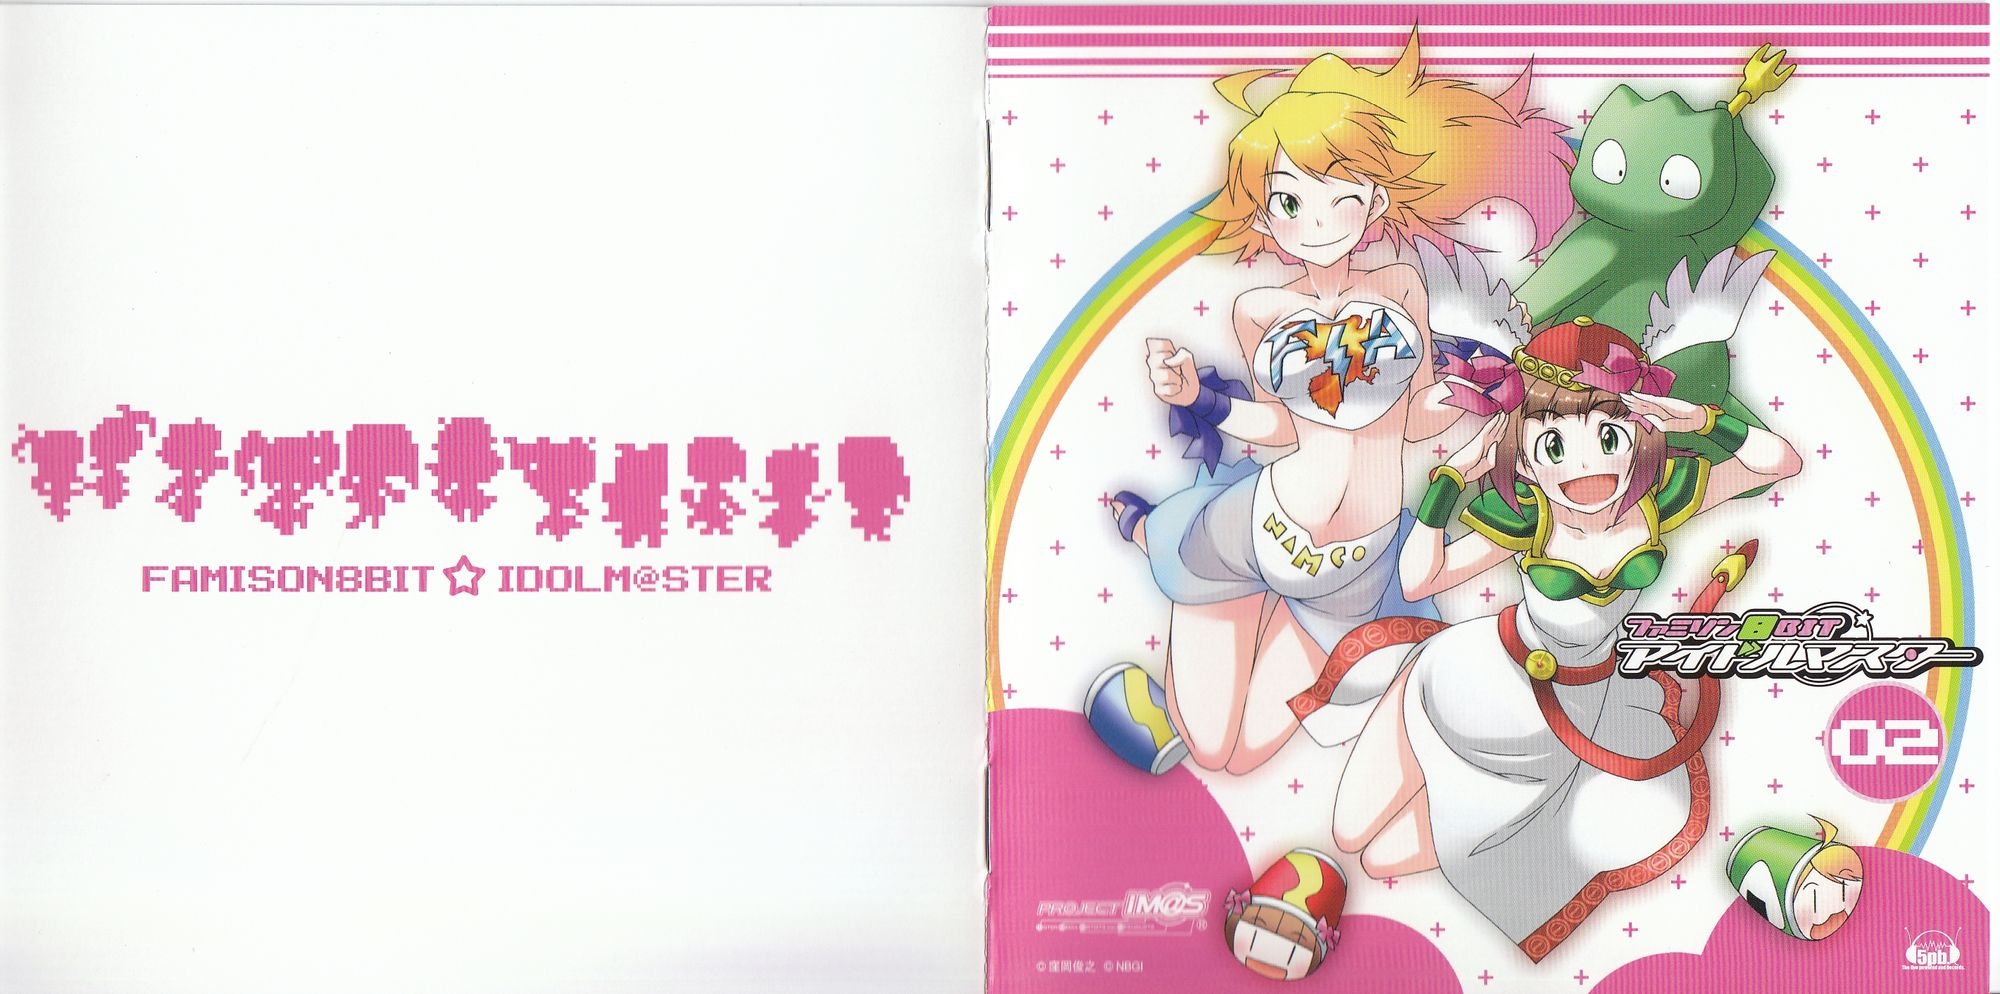 Famison 8BIT☆iDOLM@STER 02 Haruka Amami / Miki Hoshii (2008) MP3 